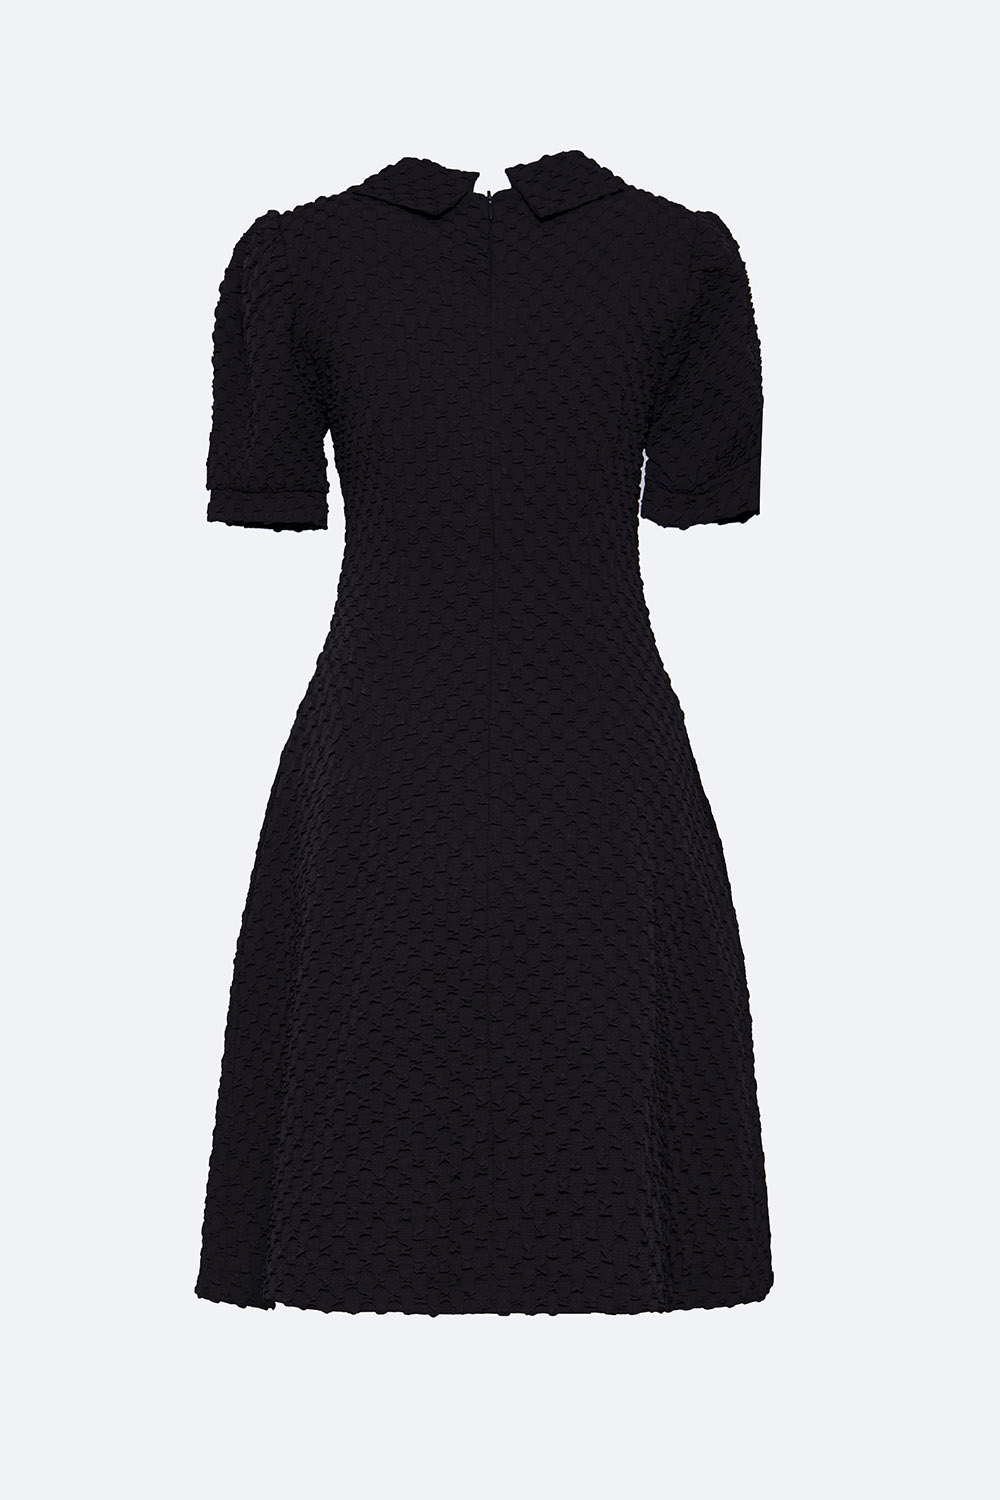 Đầm đen xòe cổ sen phối nơ tay ngắn KK116-33 | Thời trang công sở ...